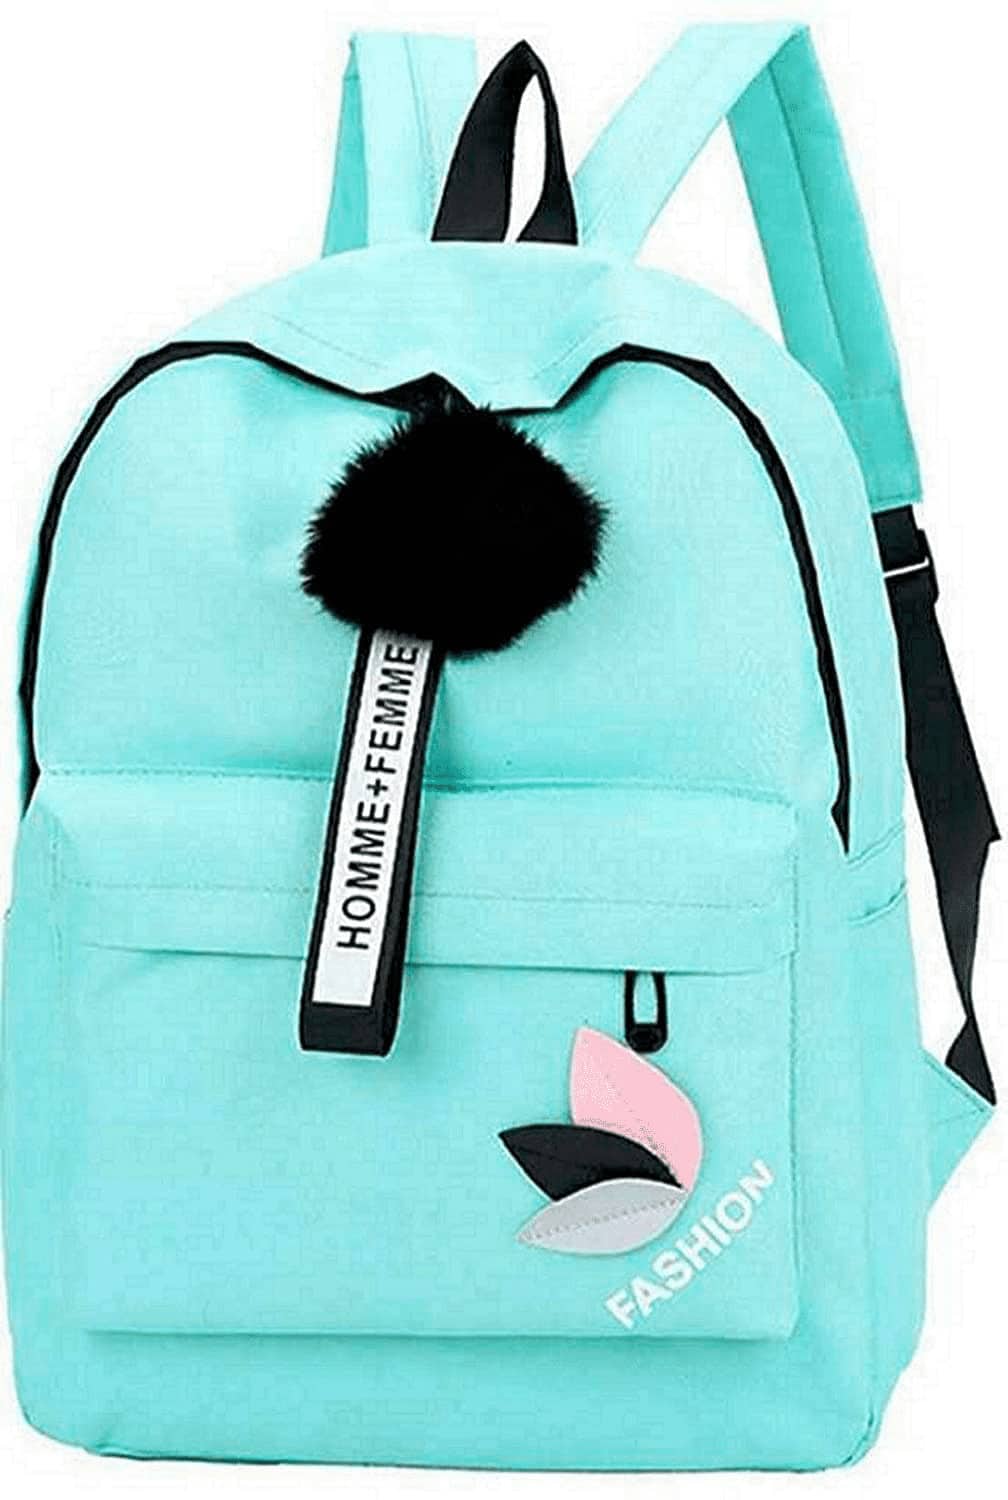 Posshusa Backpack for Women Stylish | Women Backpack Latest | School Bag for Girls (Blue)